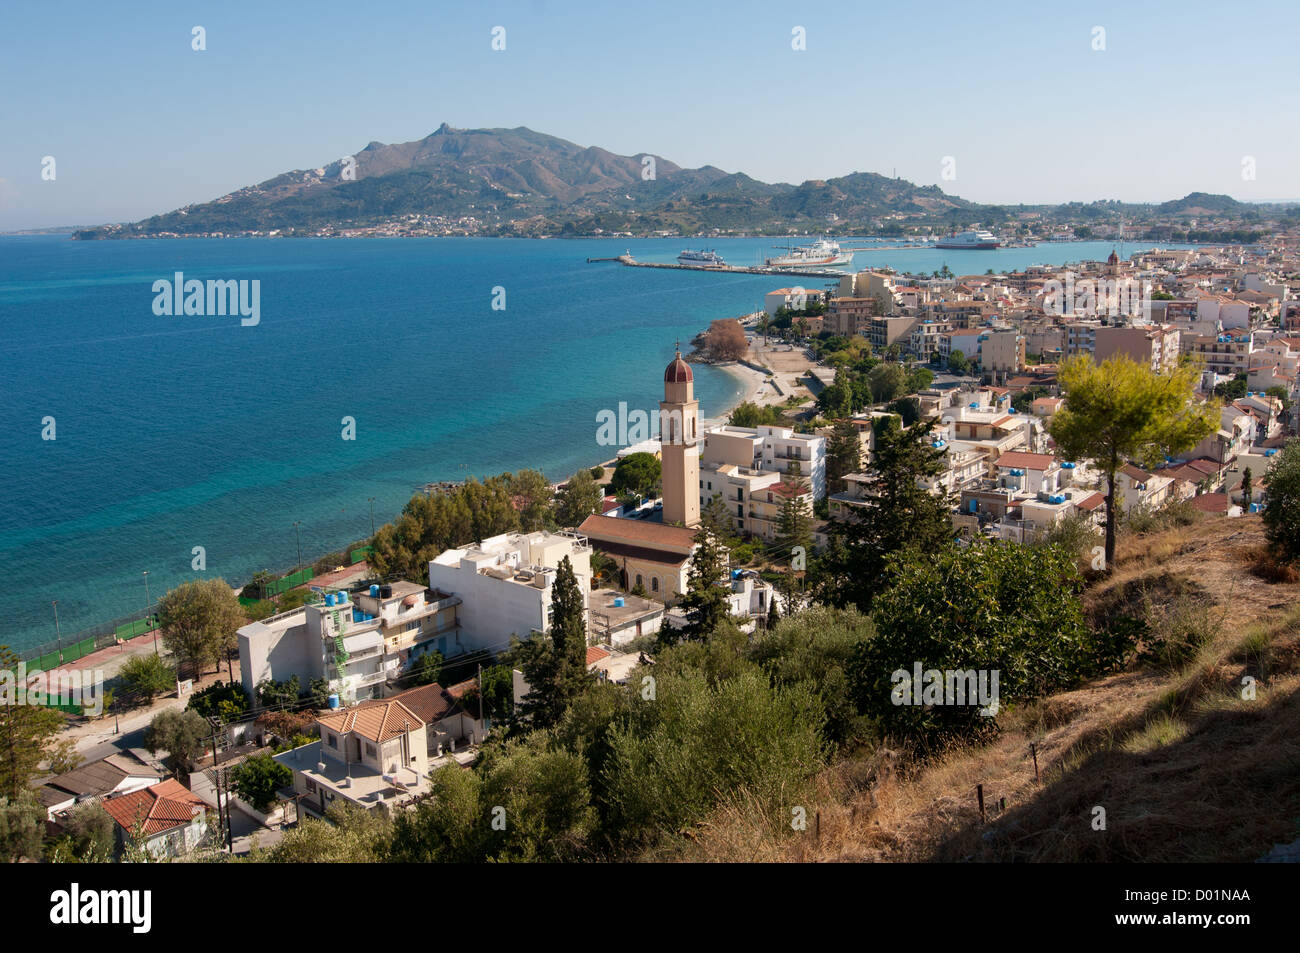 Zakynthos island, Greece. Stock Photo